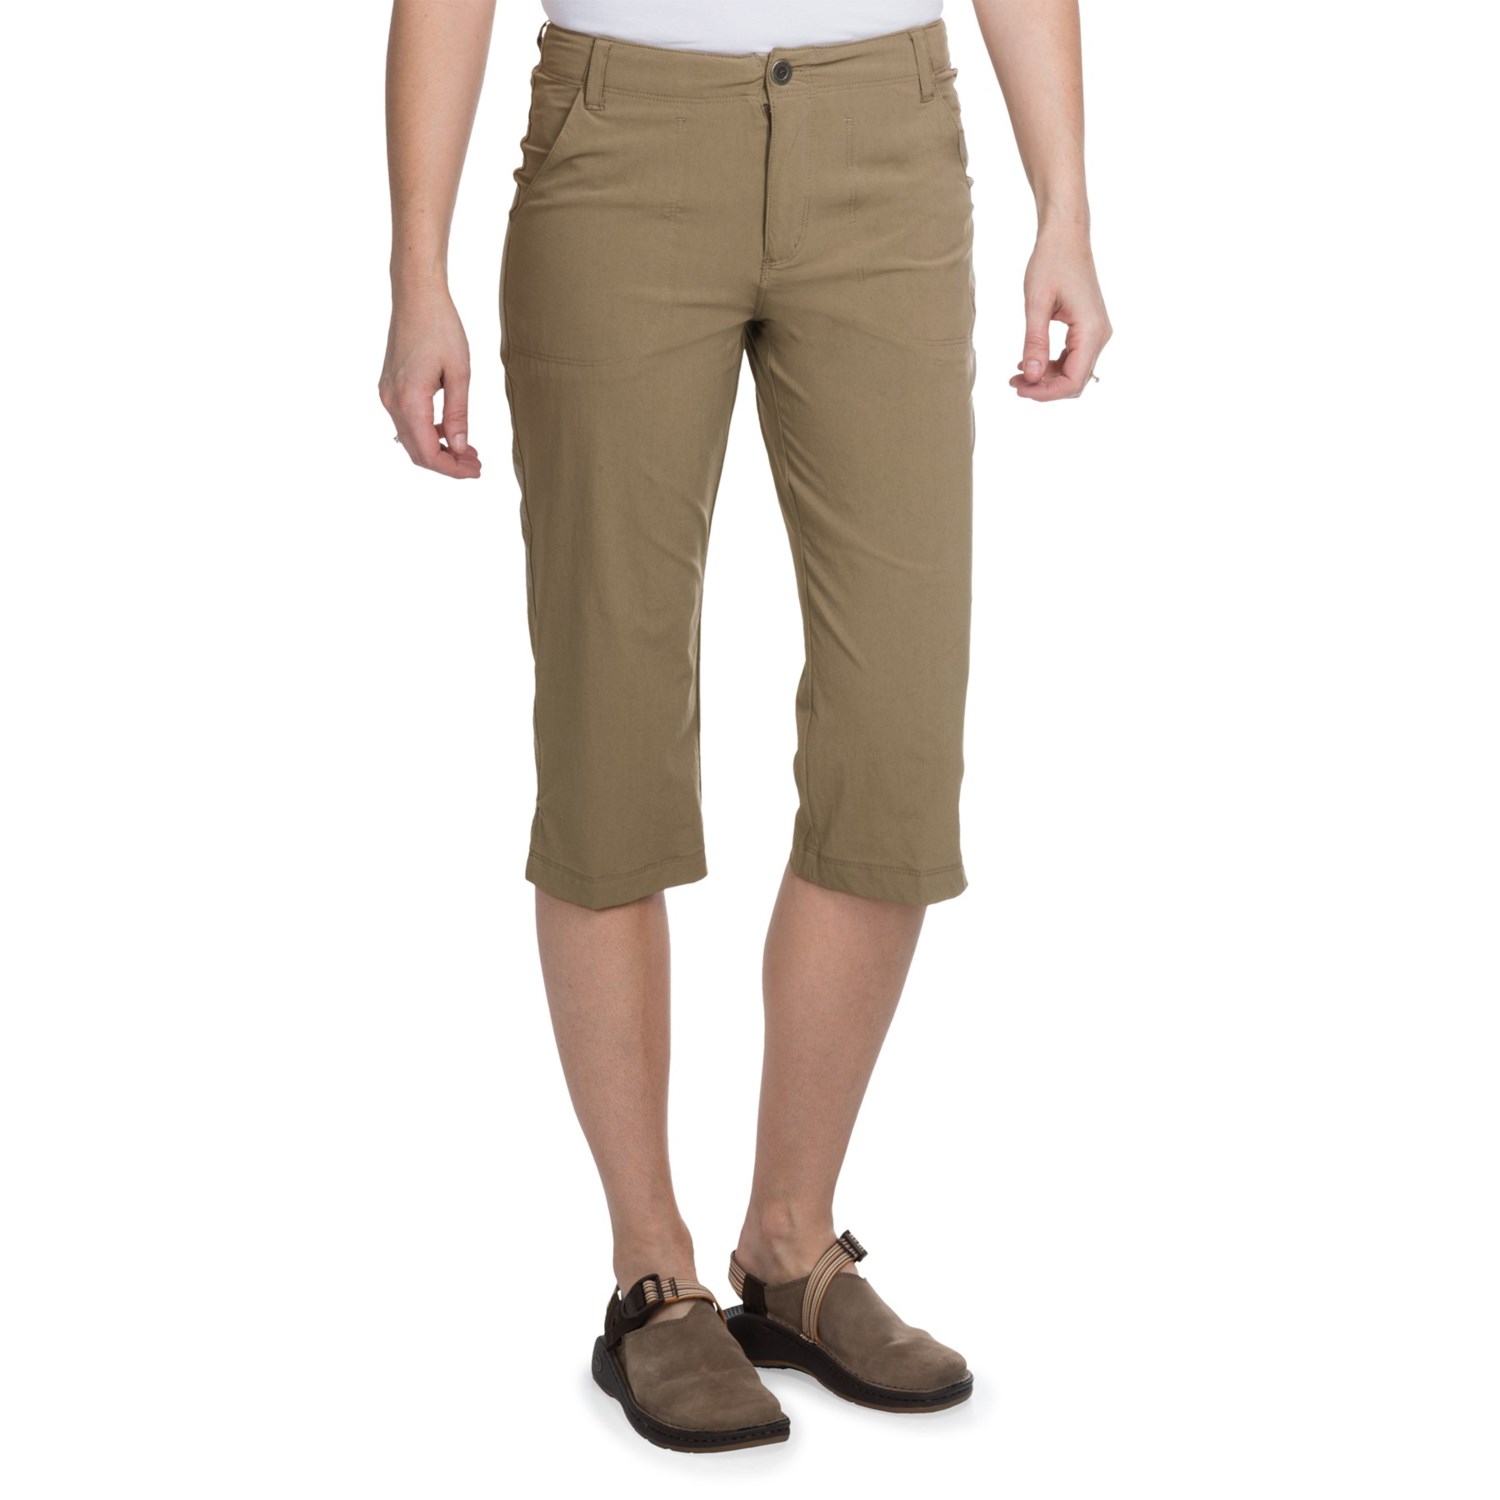 White Sierra Lakeport Skimmer Shorts (For Women) - Save 36%